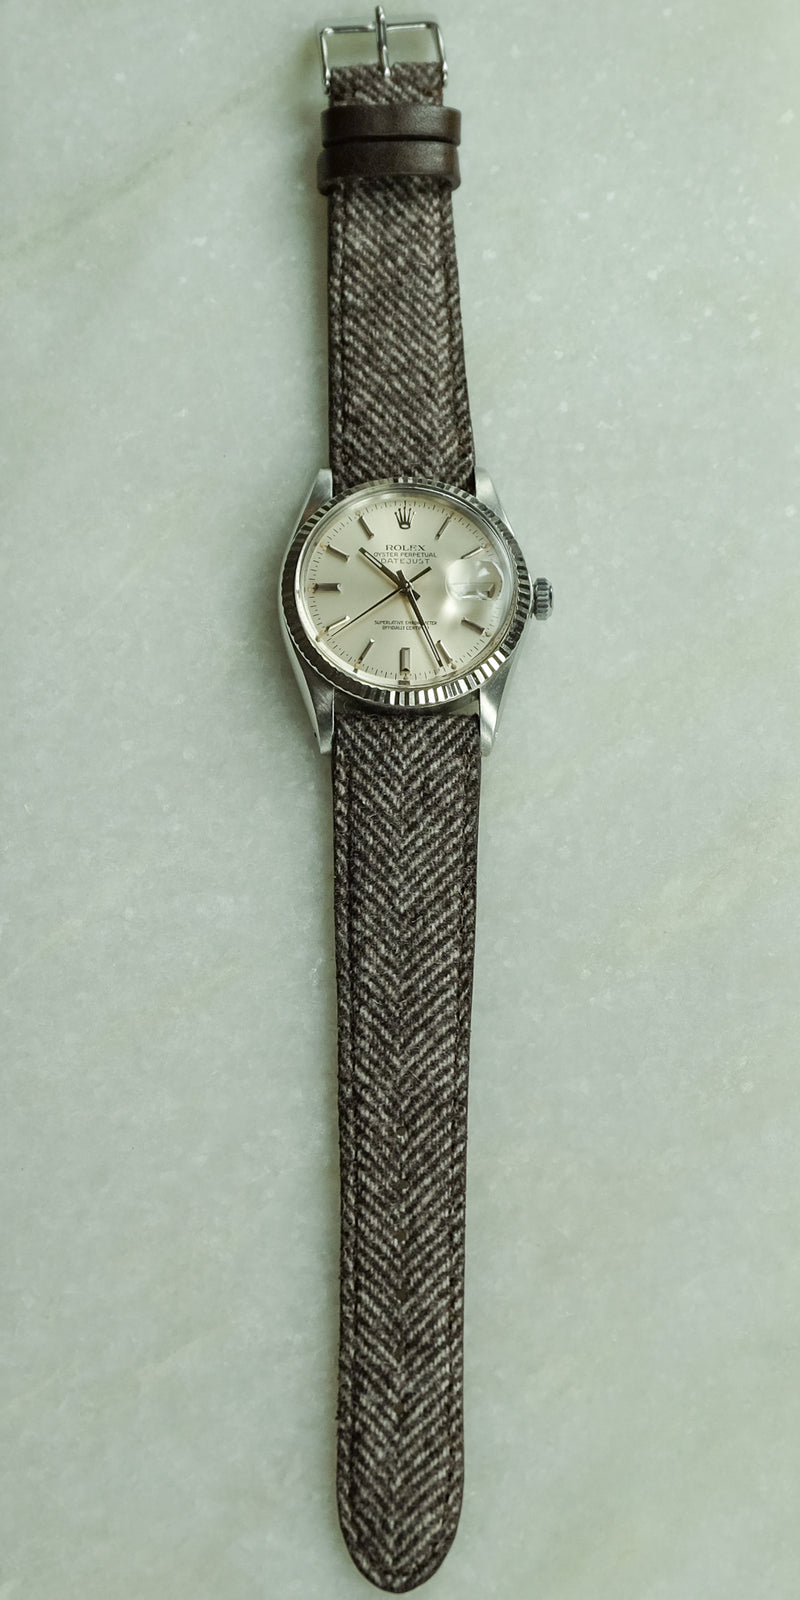 The Quaintrelle - Brown Cashmere Watch Strap